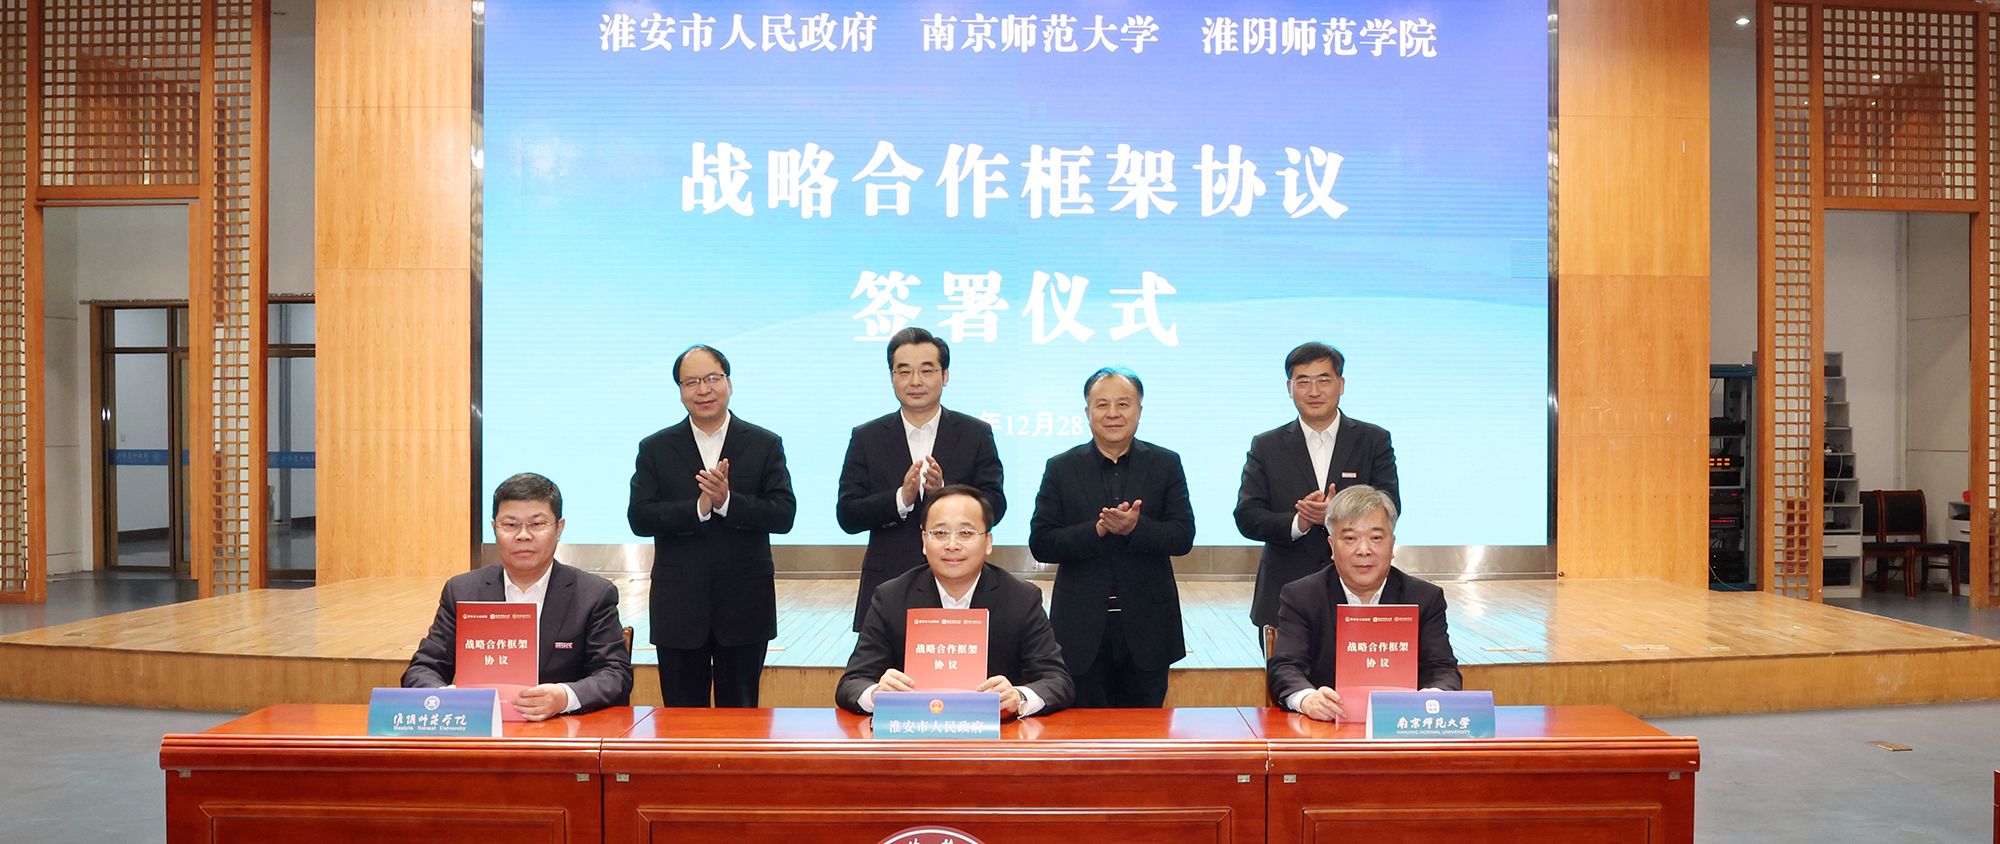 新万博ManBetX与淮安市人民政府、南京师范大学签署战略合作框架协议